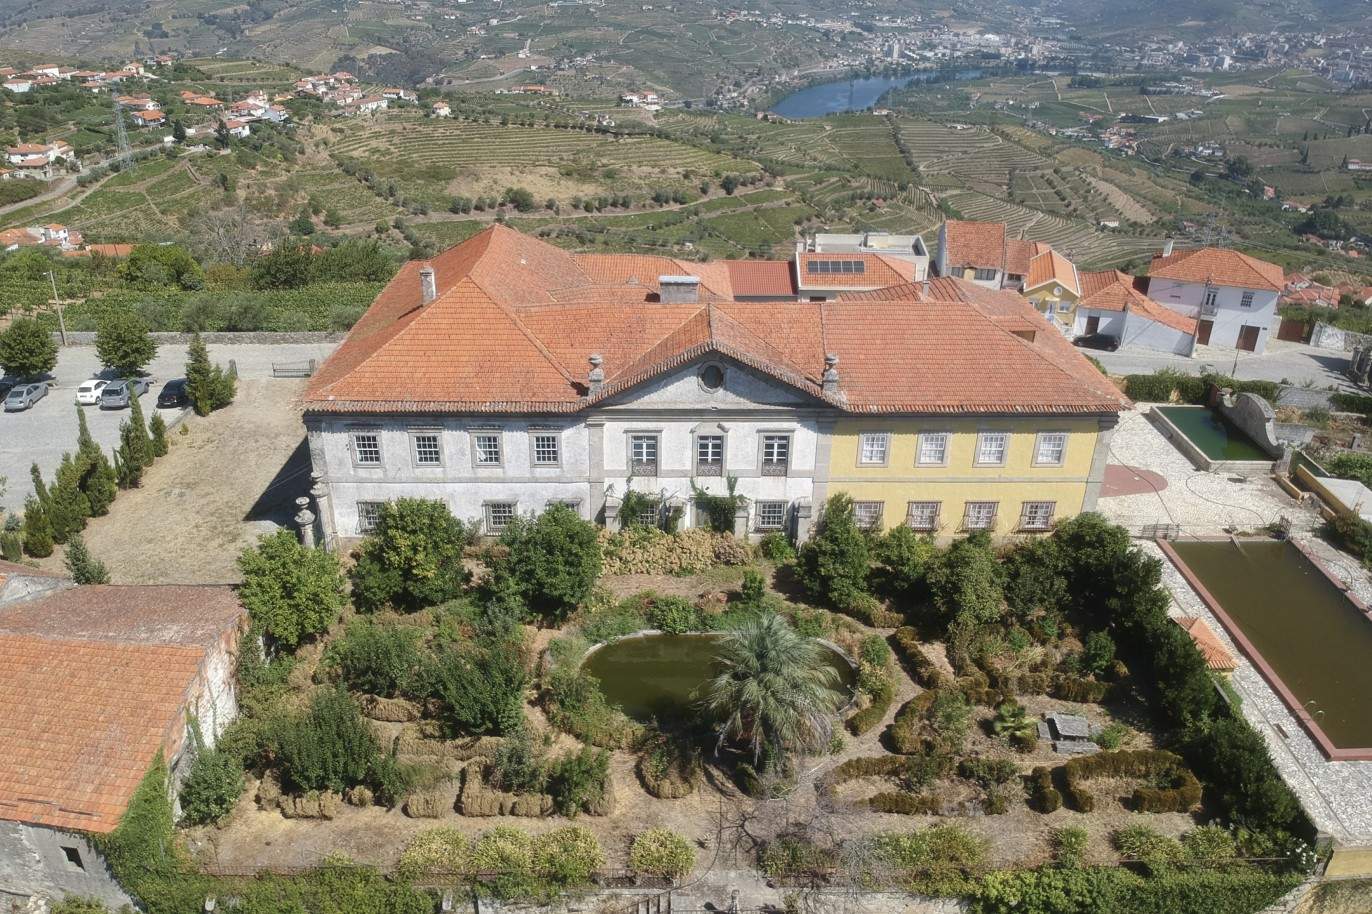 Vente : restauration du Palacete avec jardins et fontaine centenaire, à Lamego, Valeé du Douro, nord du Portugal_207354